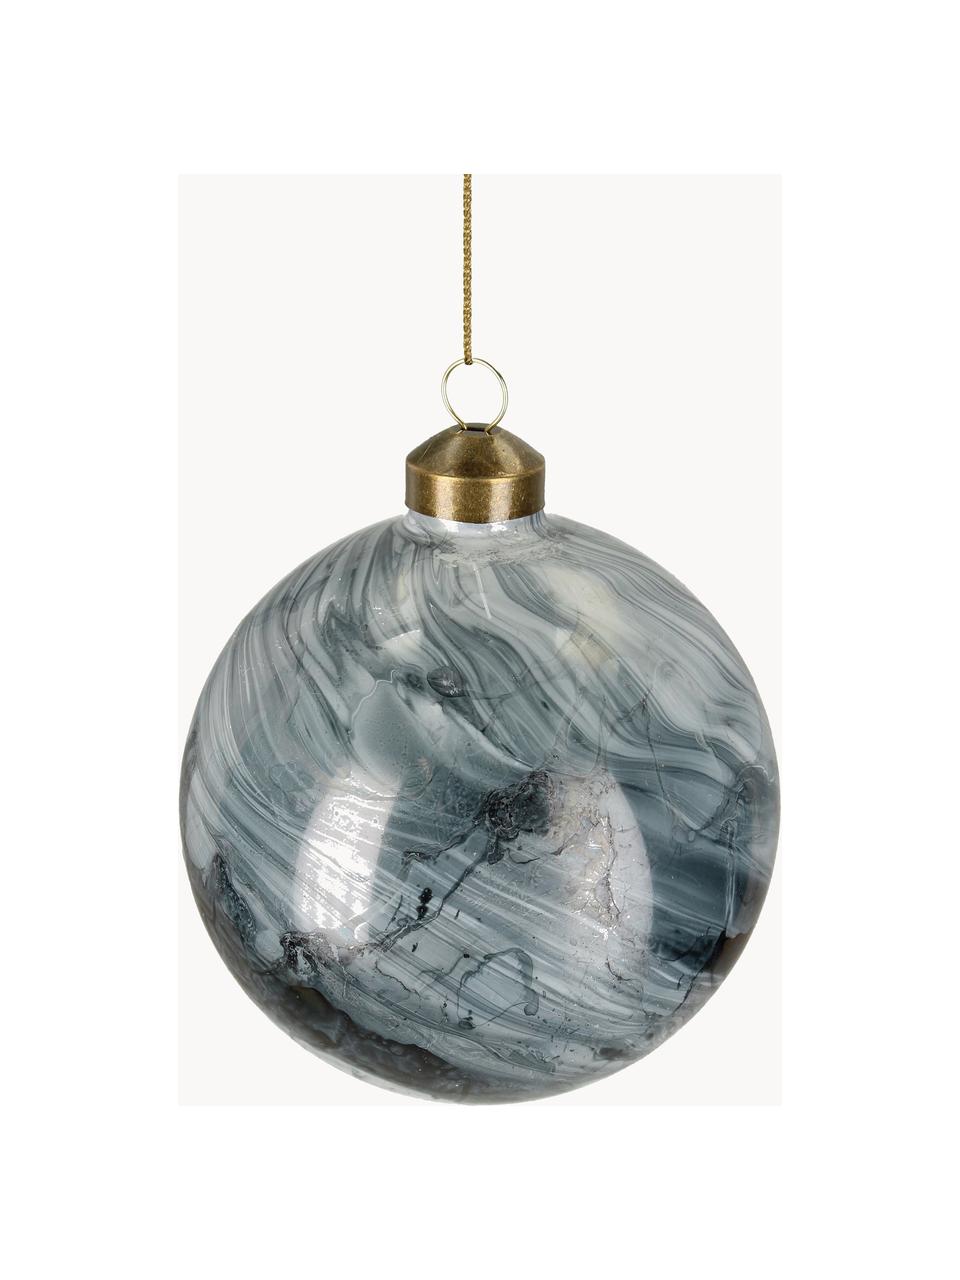 Weihnachtskugeln Marble in Marmoroptik, 6 Stück, Glas, Graublau, Weiss, dunkel, Ø 10 cm